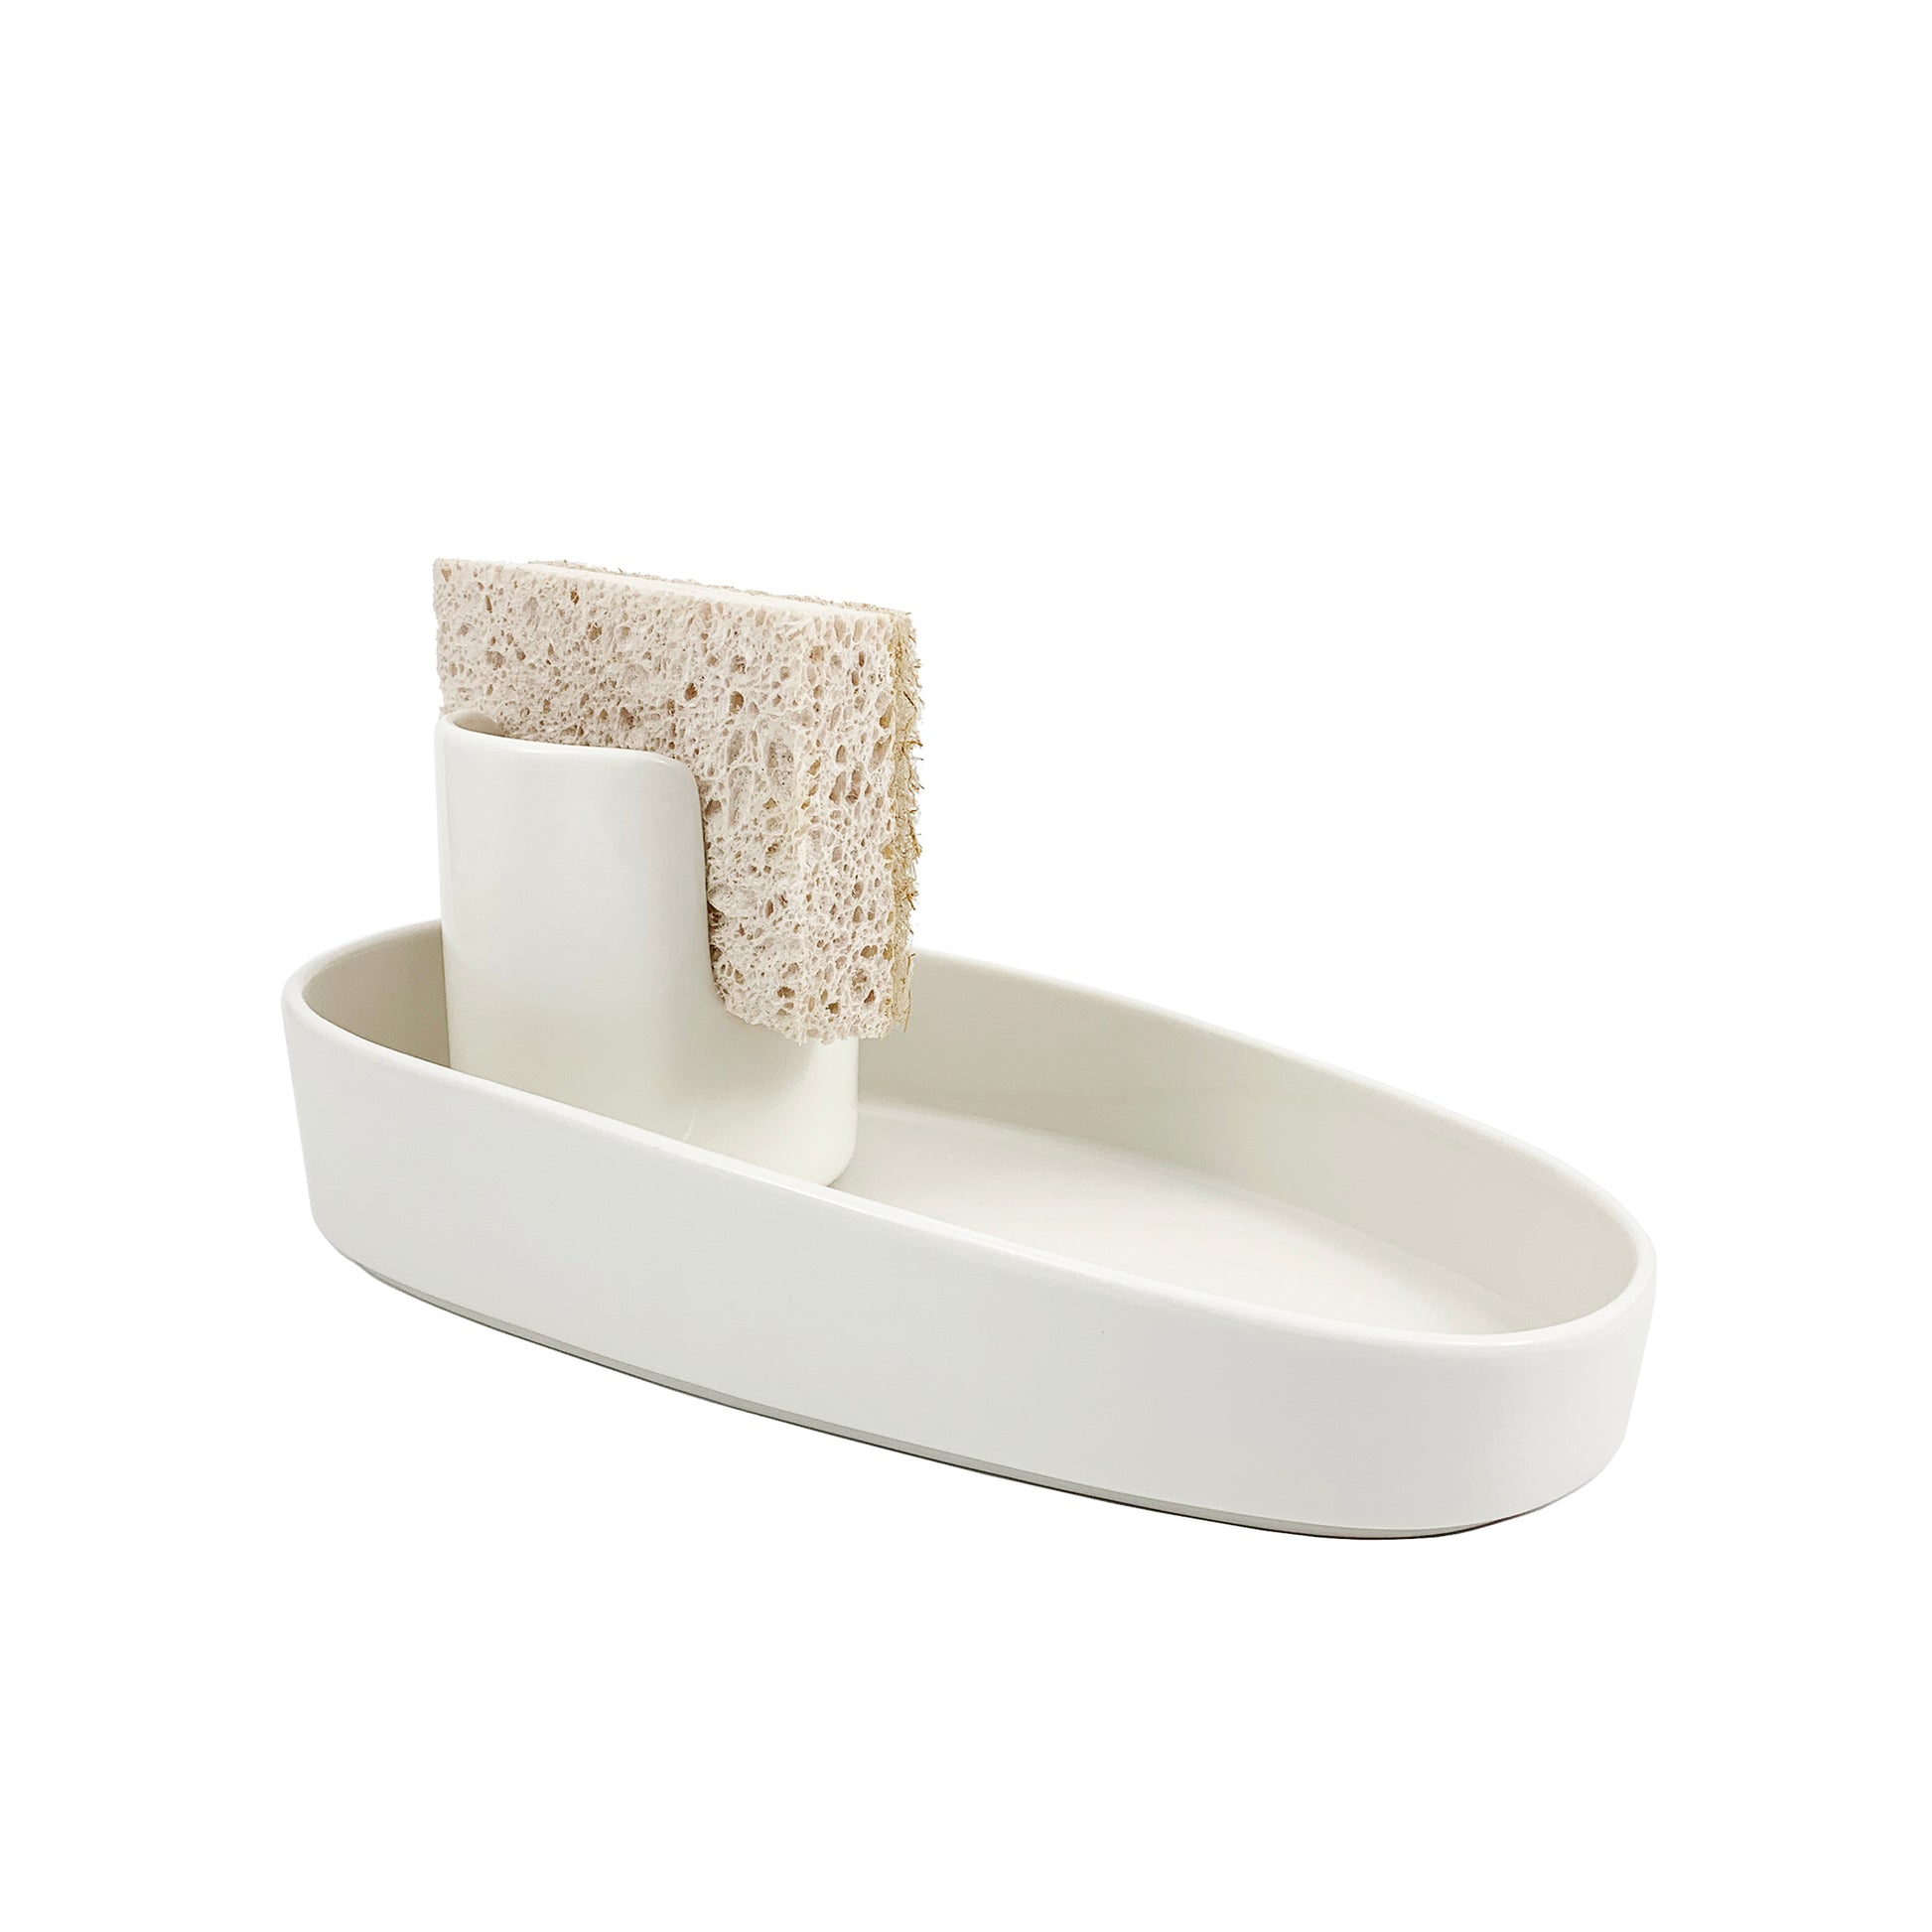 Sponge and Brush Holder Ceramic White 